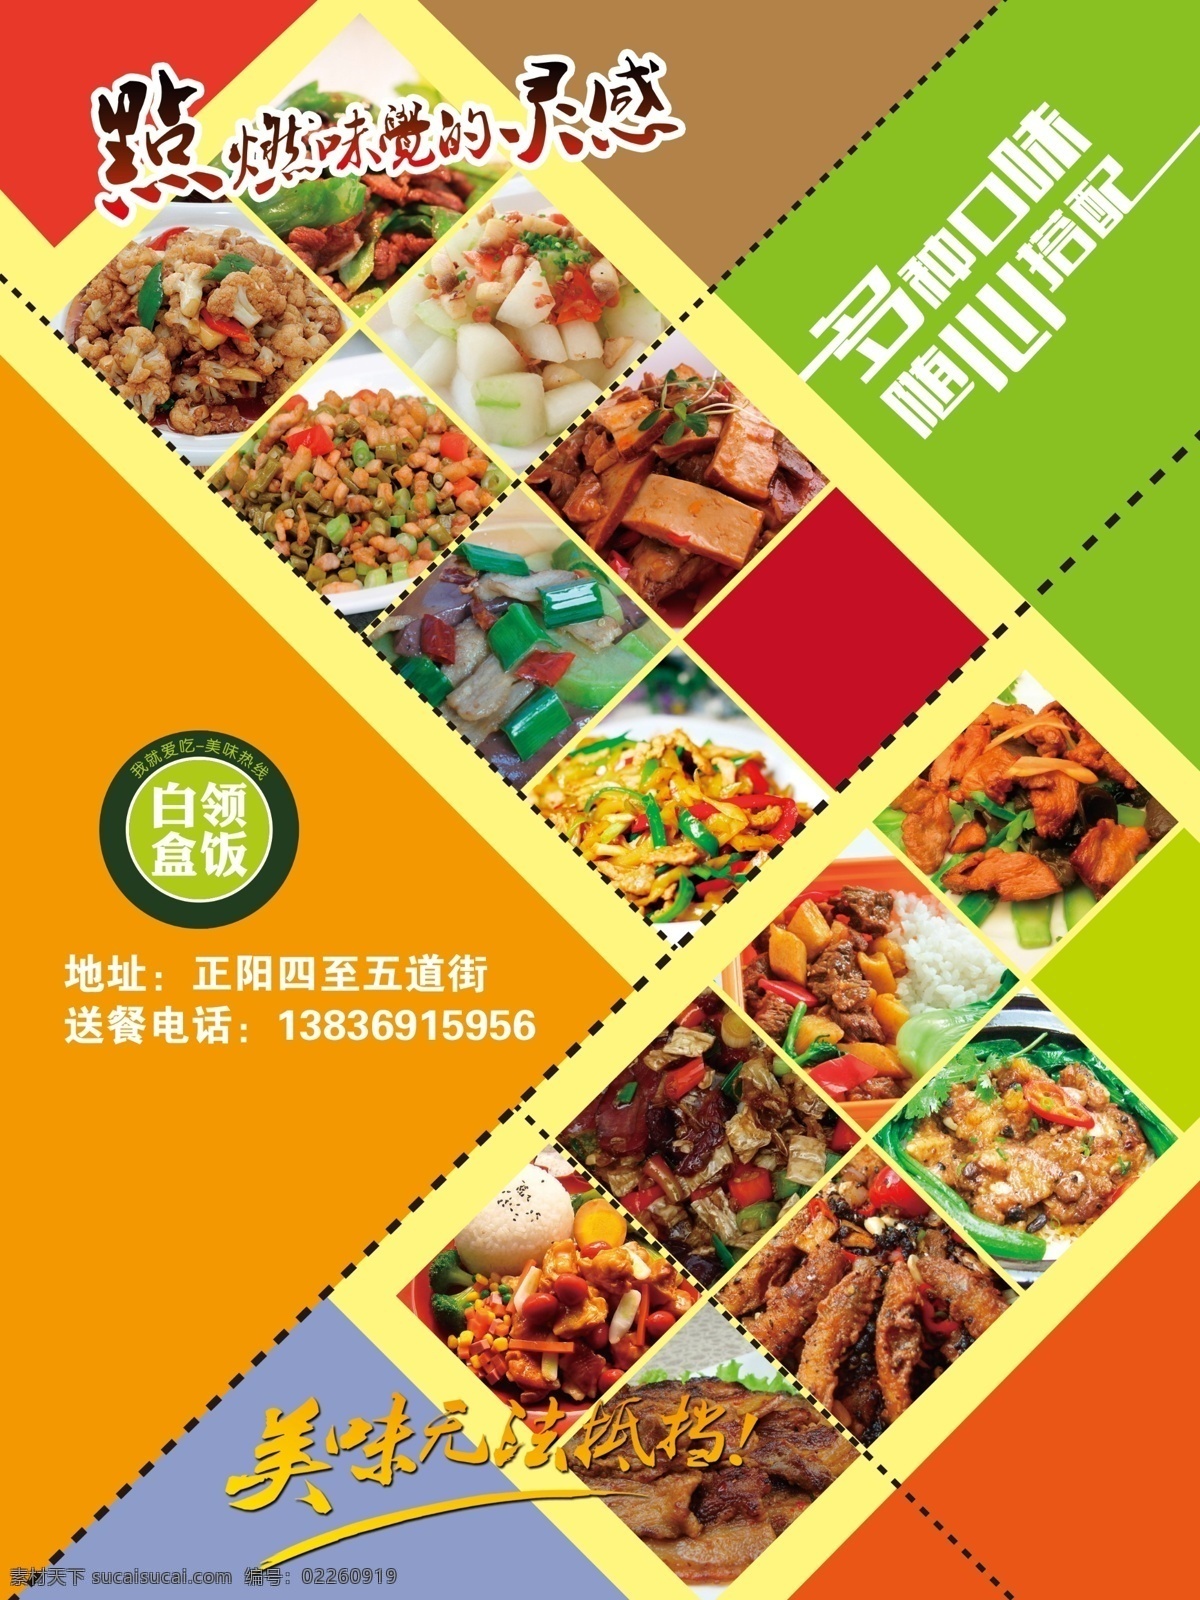 白领 盒饭 免费 送 餐 蟹 海报 宣传海报 宣传单 彩页 dm